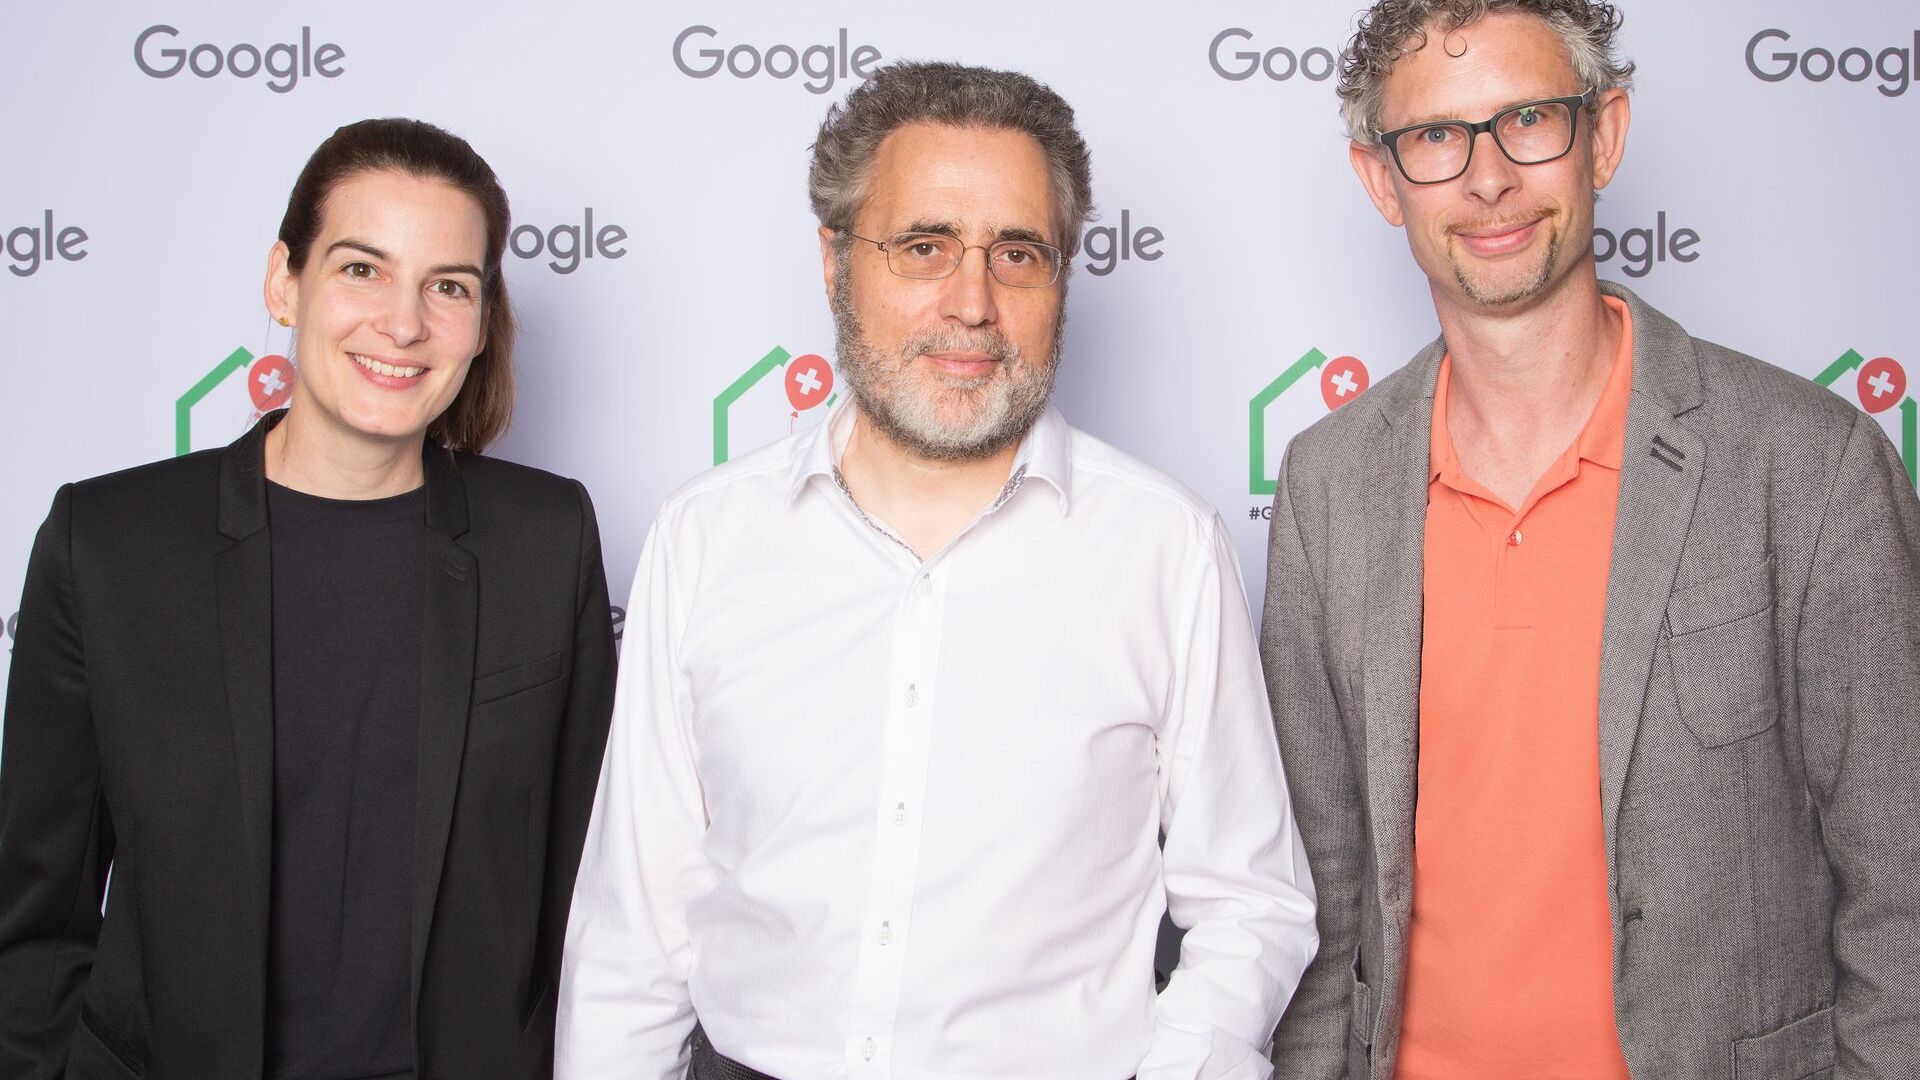 Urs Hölzle, Senior Vice President för teknisk infrastruktur, och Pia De Carli och Samuel Leiser, mediateam Schweiz, deltog i den officiella invigningen av Googles nya Campus Europaallee i Zürich den 27 juni 2022